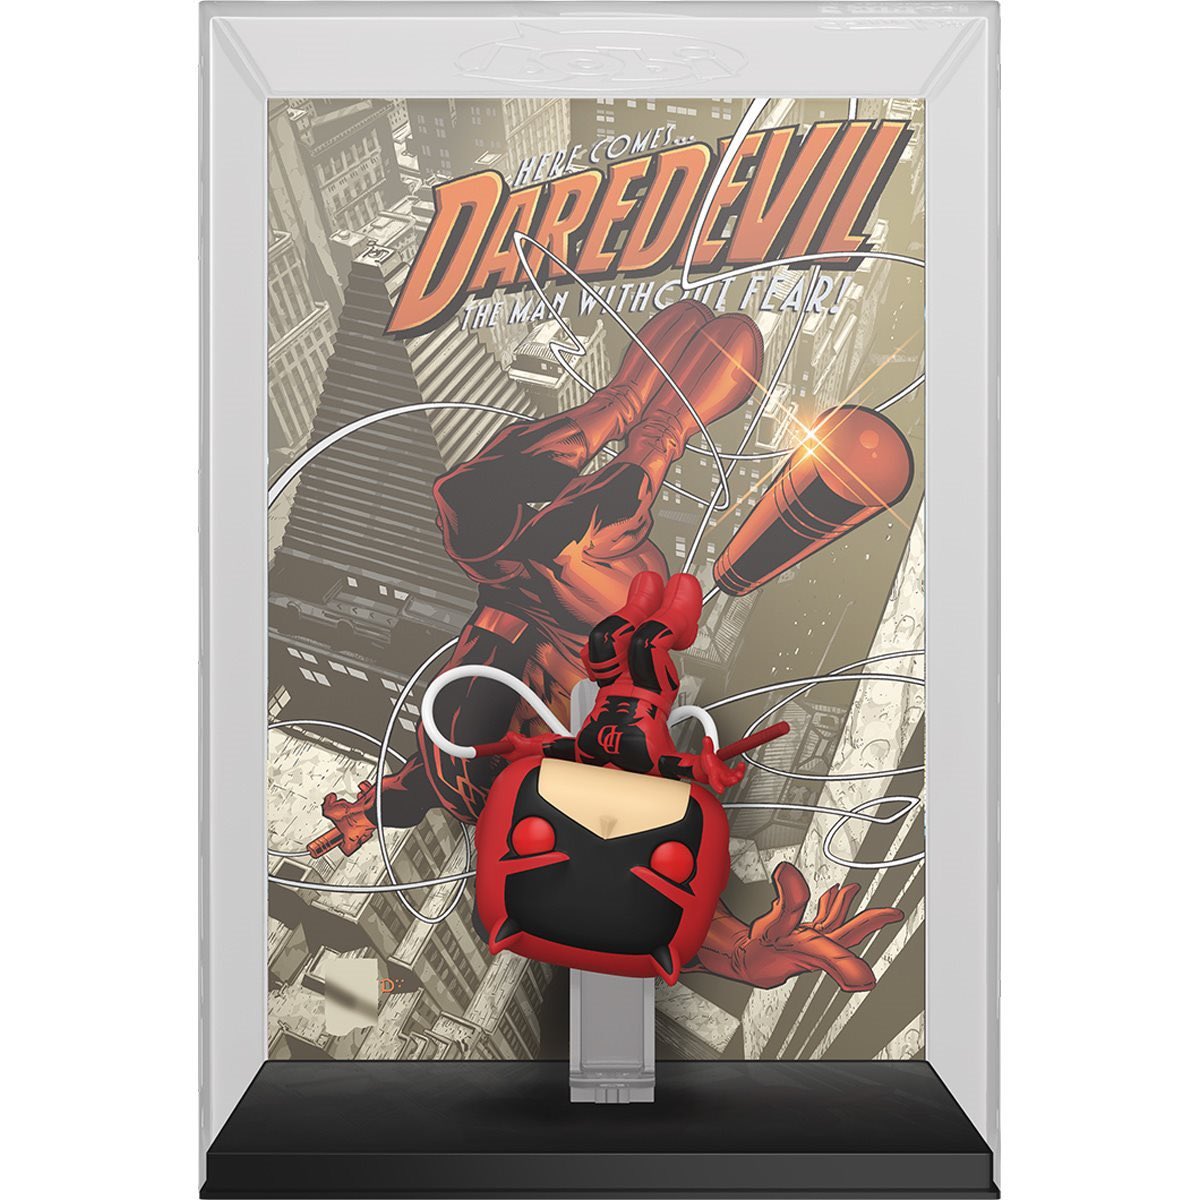 Daredevil Pop Comic Cover! Order here ➡️ ee.toys/FY8XSP #Funko #Marvel #Daredevil